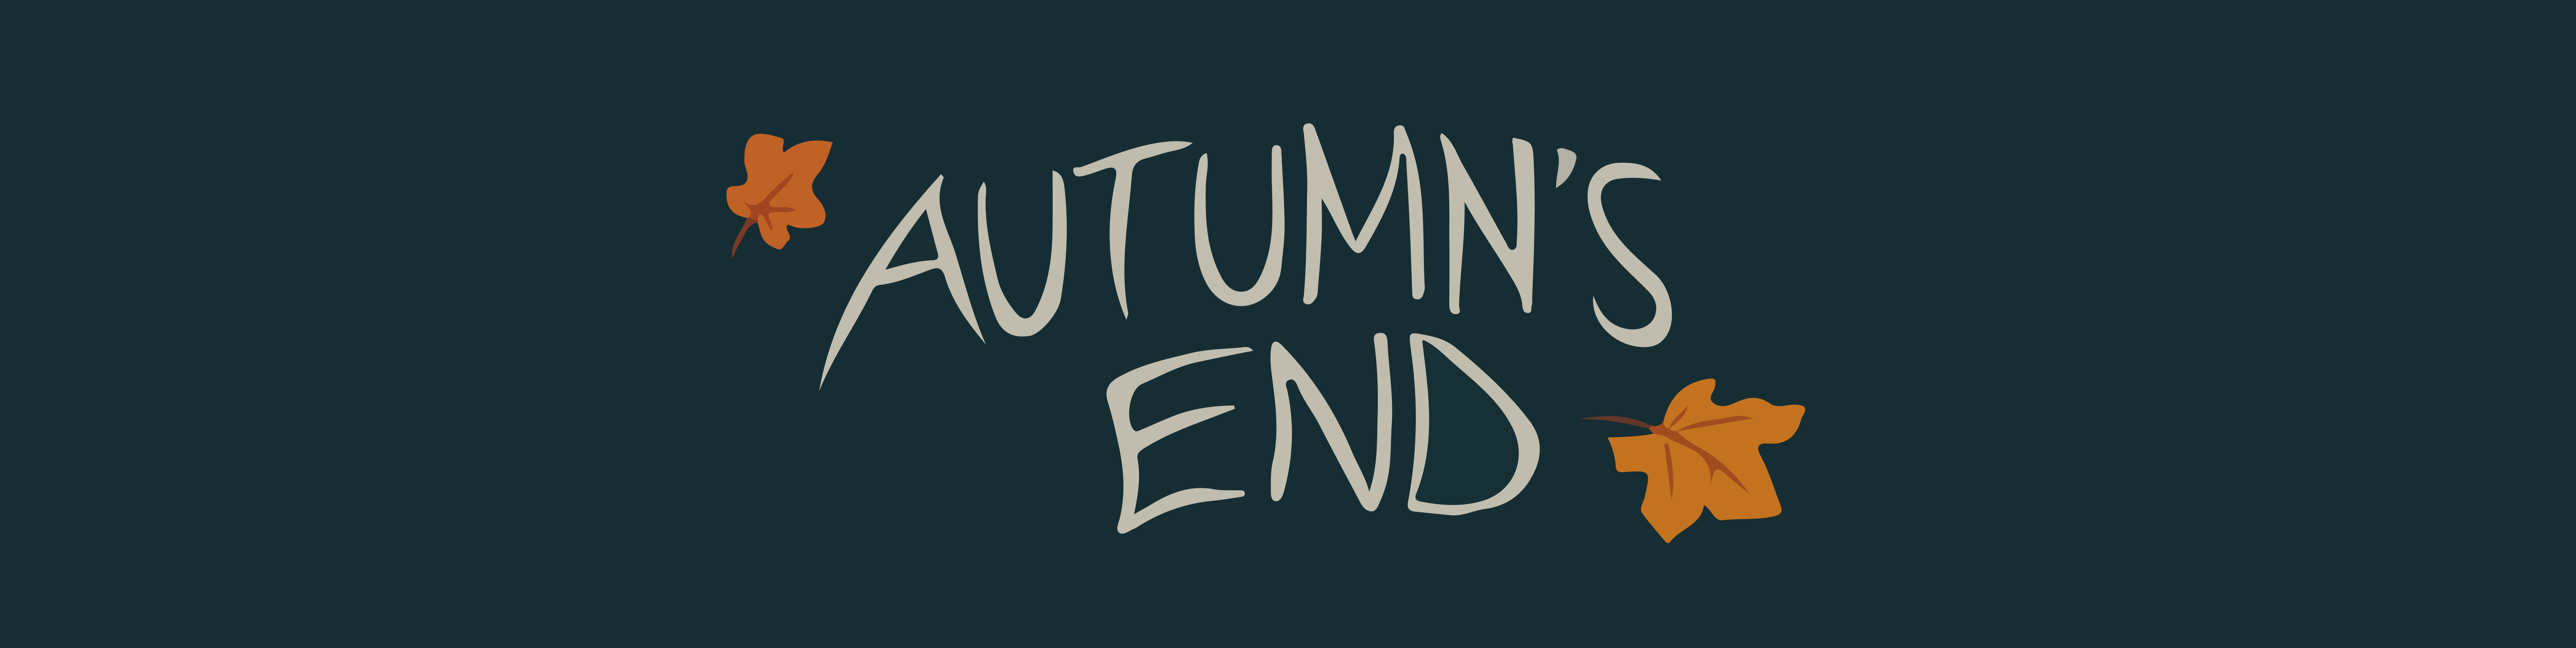 Autumn's End (Prototype)